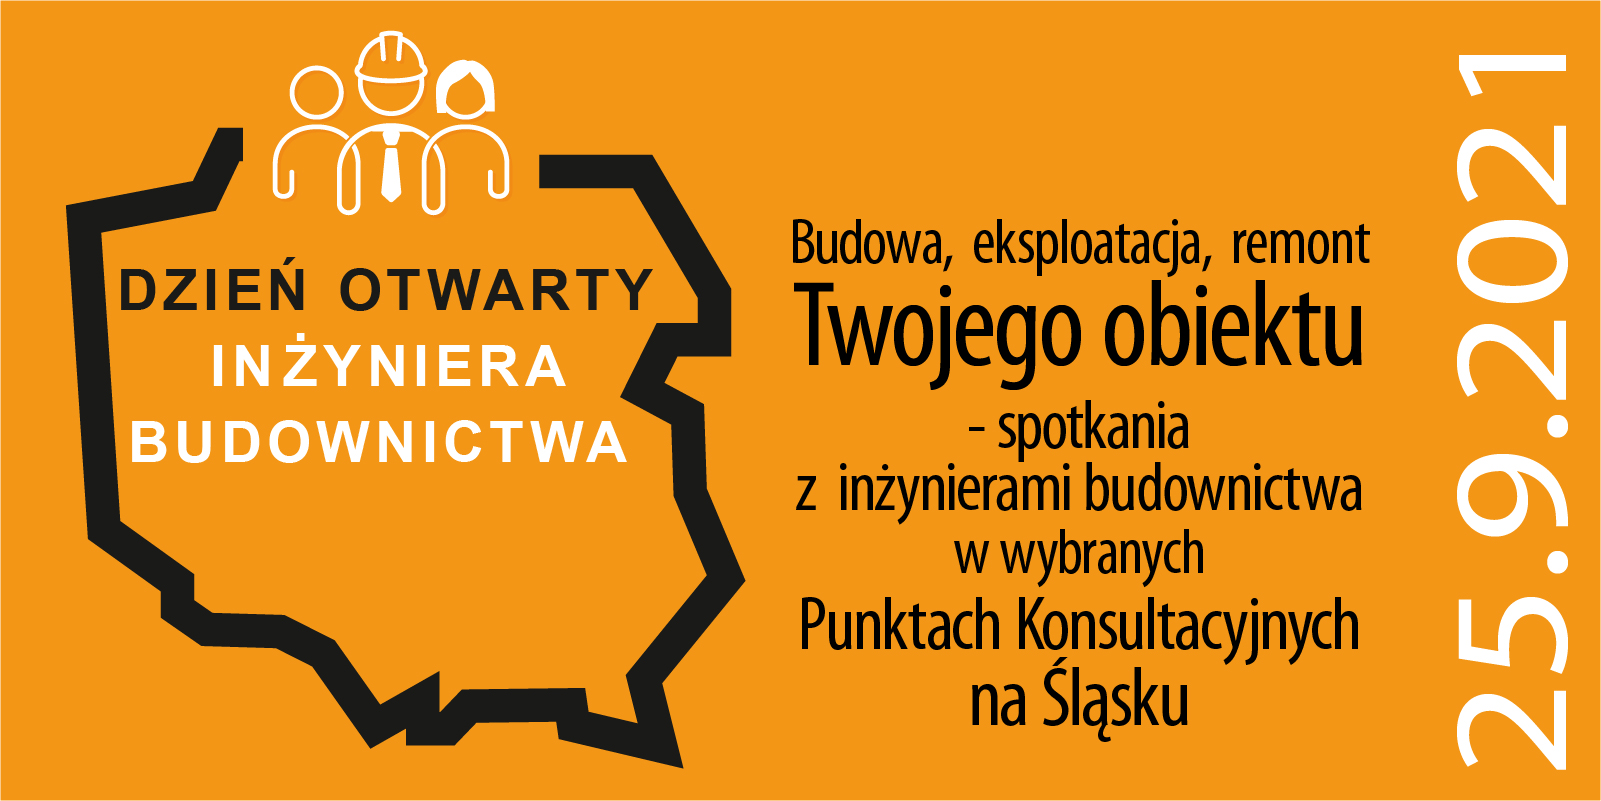 25 września - Dzień Otwarty Inżyniera Budownictwa na Śląsku. Zapraszamy do udziału